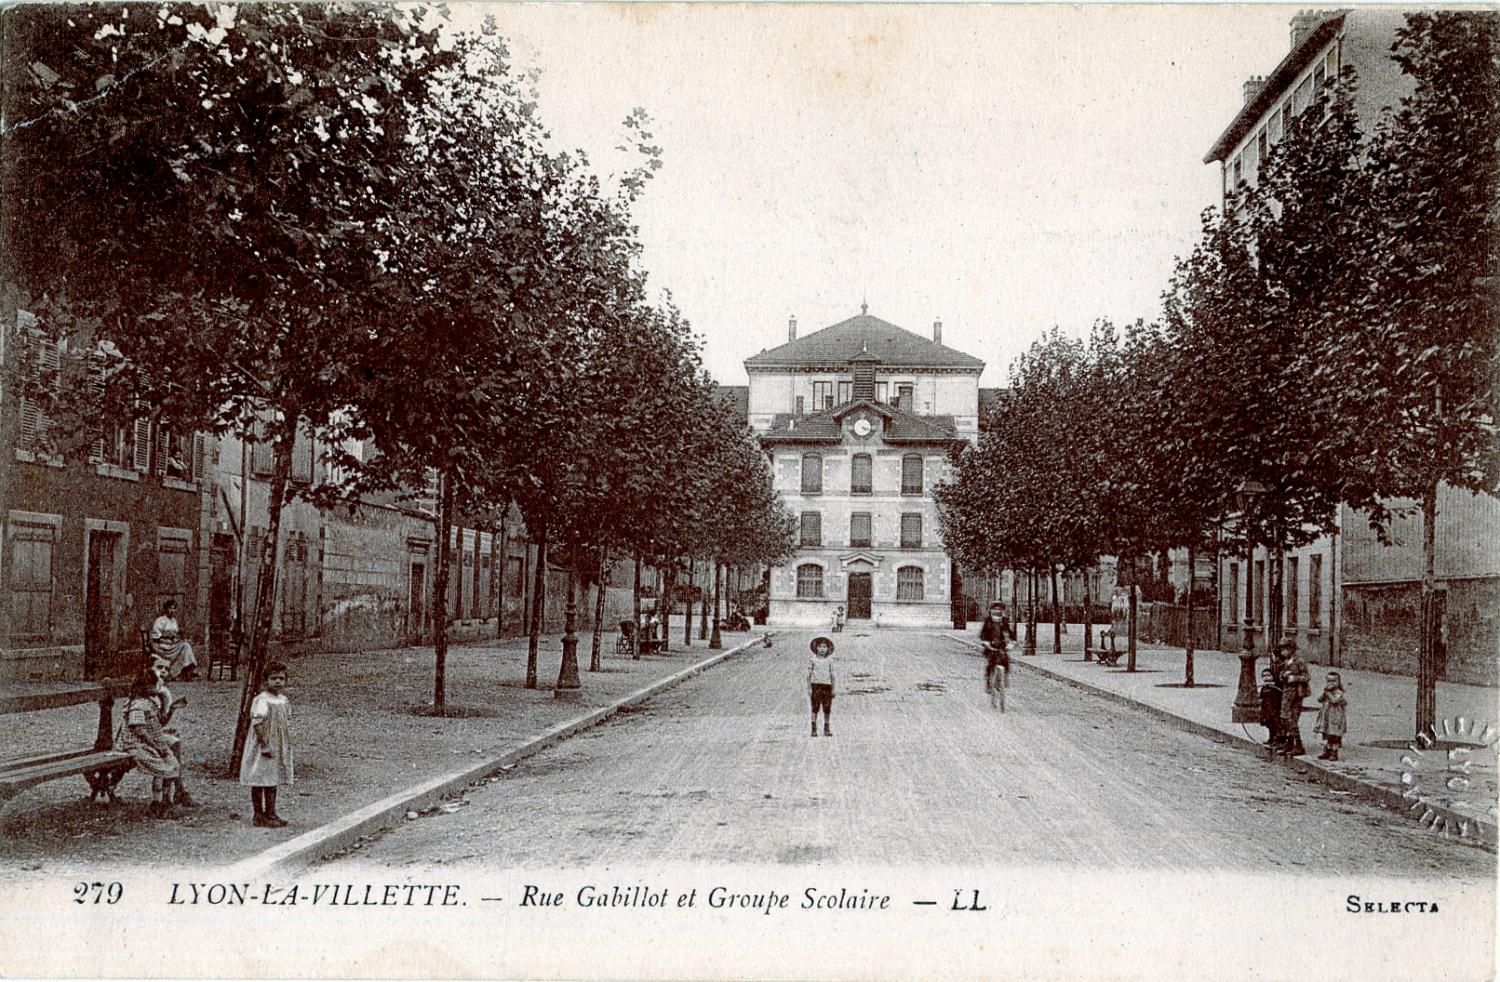 LYON-LA-VILLETTE : Rue Gabillot et Groupe Scolaire